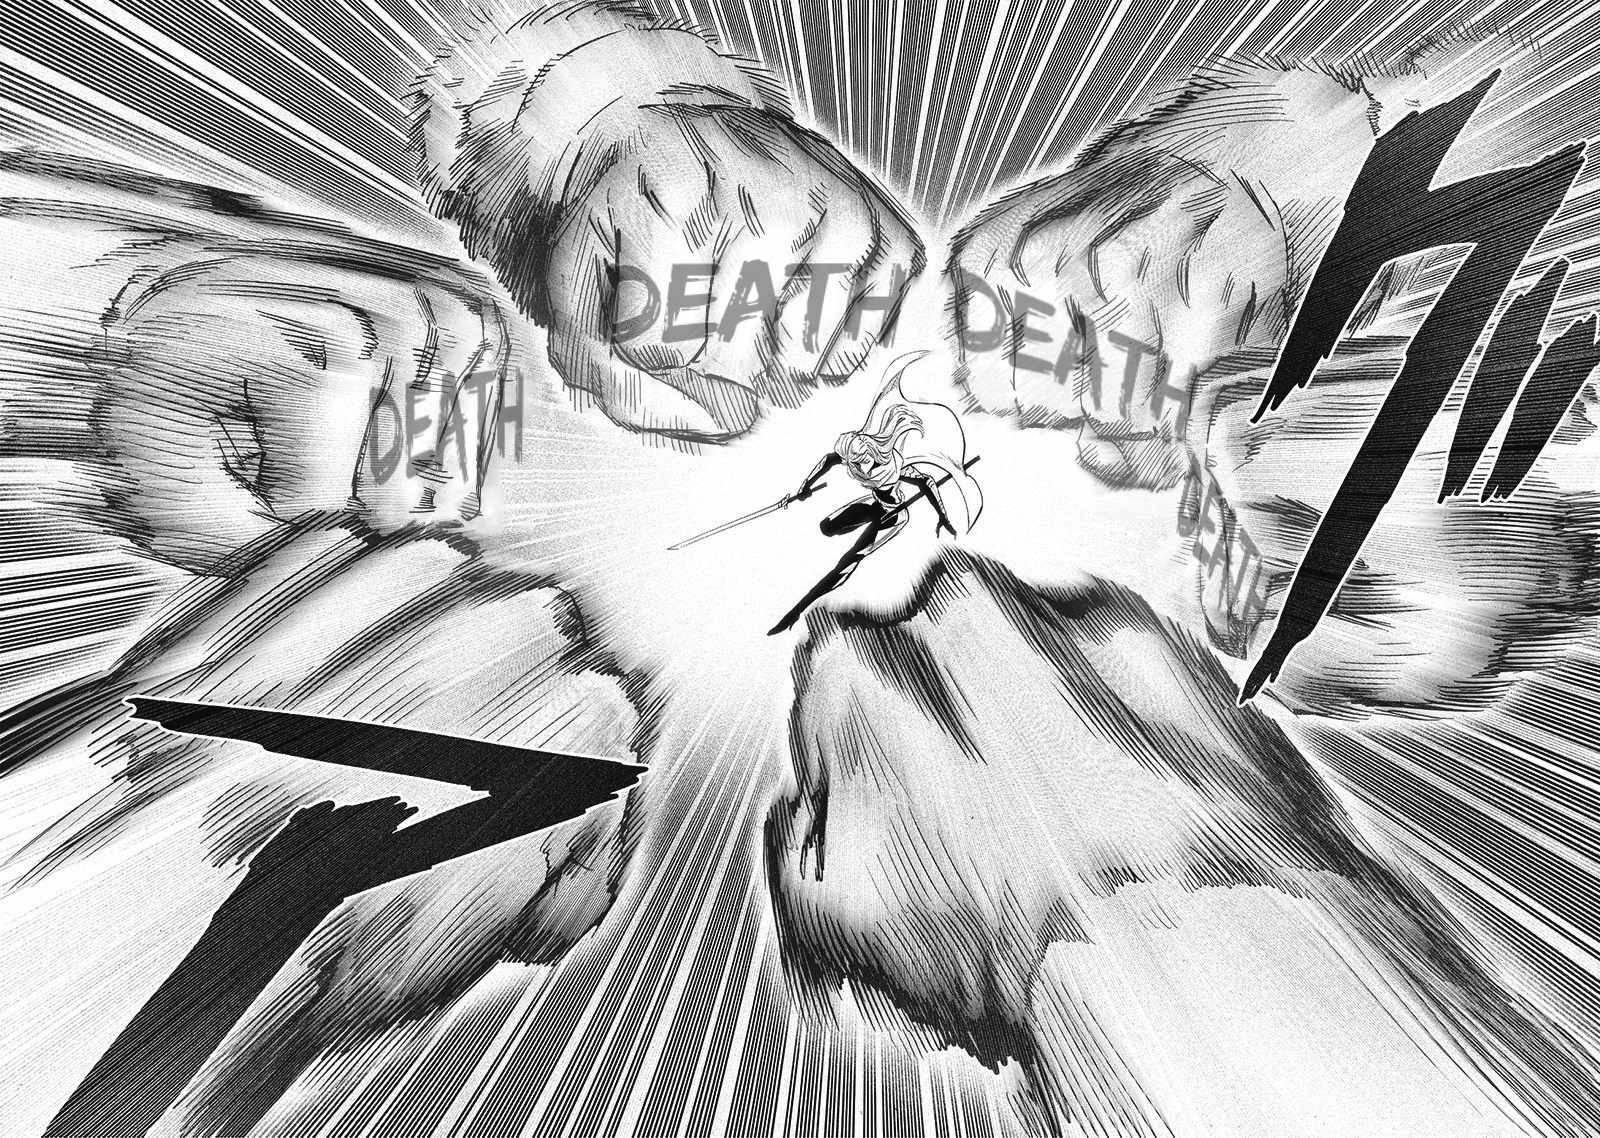 read One-Punch Man  Chapter 201 Manga Online Free at Mangabuddy, MangaNato,Manhwatop | MangaSo.com